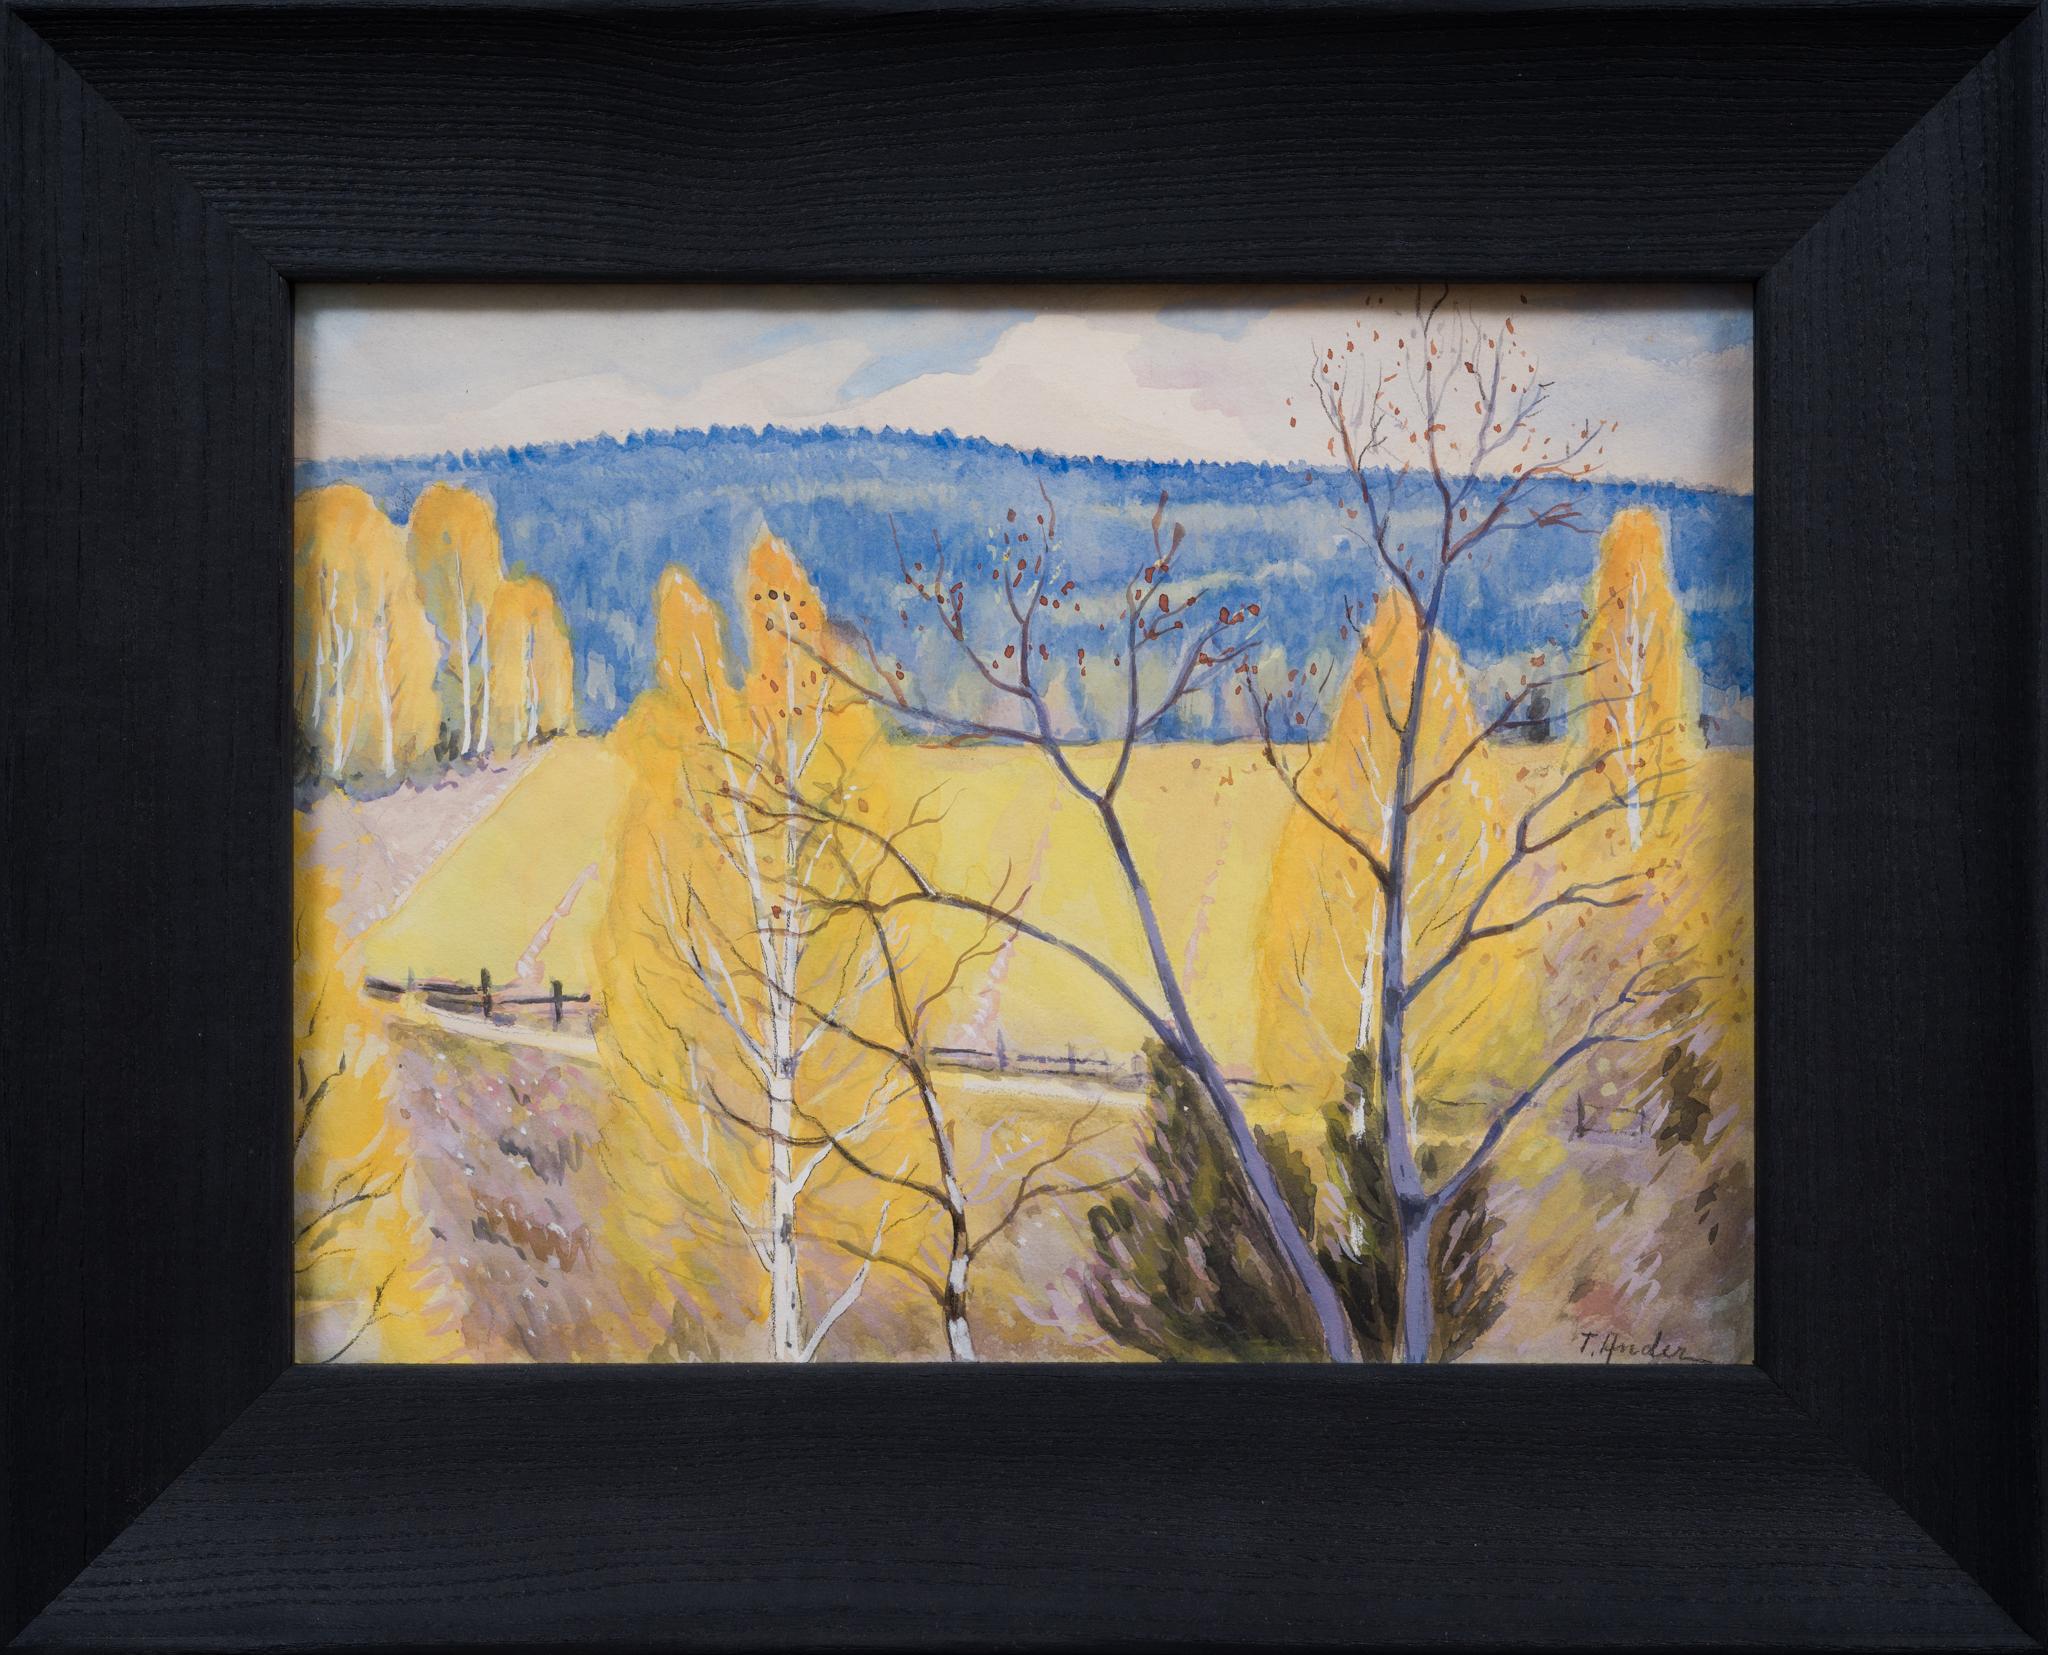 "Eine Värmland-Landschaft" ist ein Aquarell von Ture Ander, einem Künstler, der Mitglied der Racken-Gruppe war. Dieses Kunstwerk, das auf der Rückseite fälschlicherweise mit "Vår i Värmland, 1941" (Frühling in Värmland, 1941) betitelt ist, zeigt in